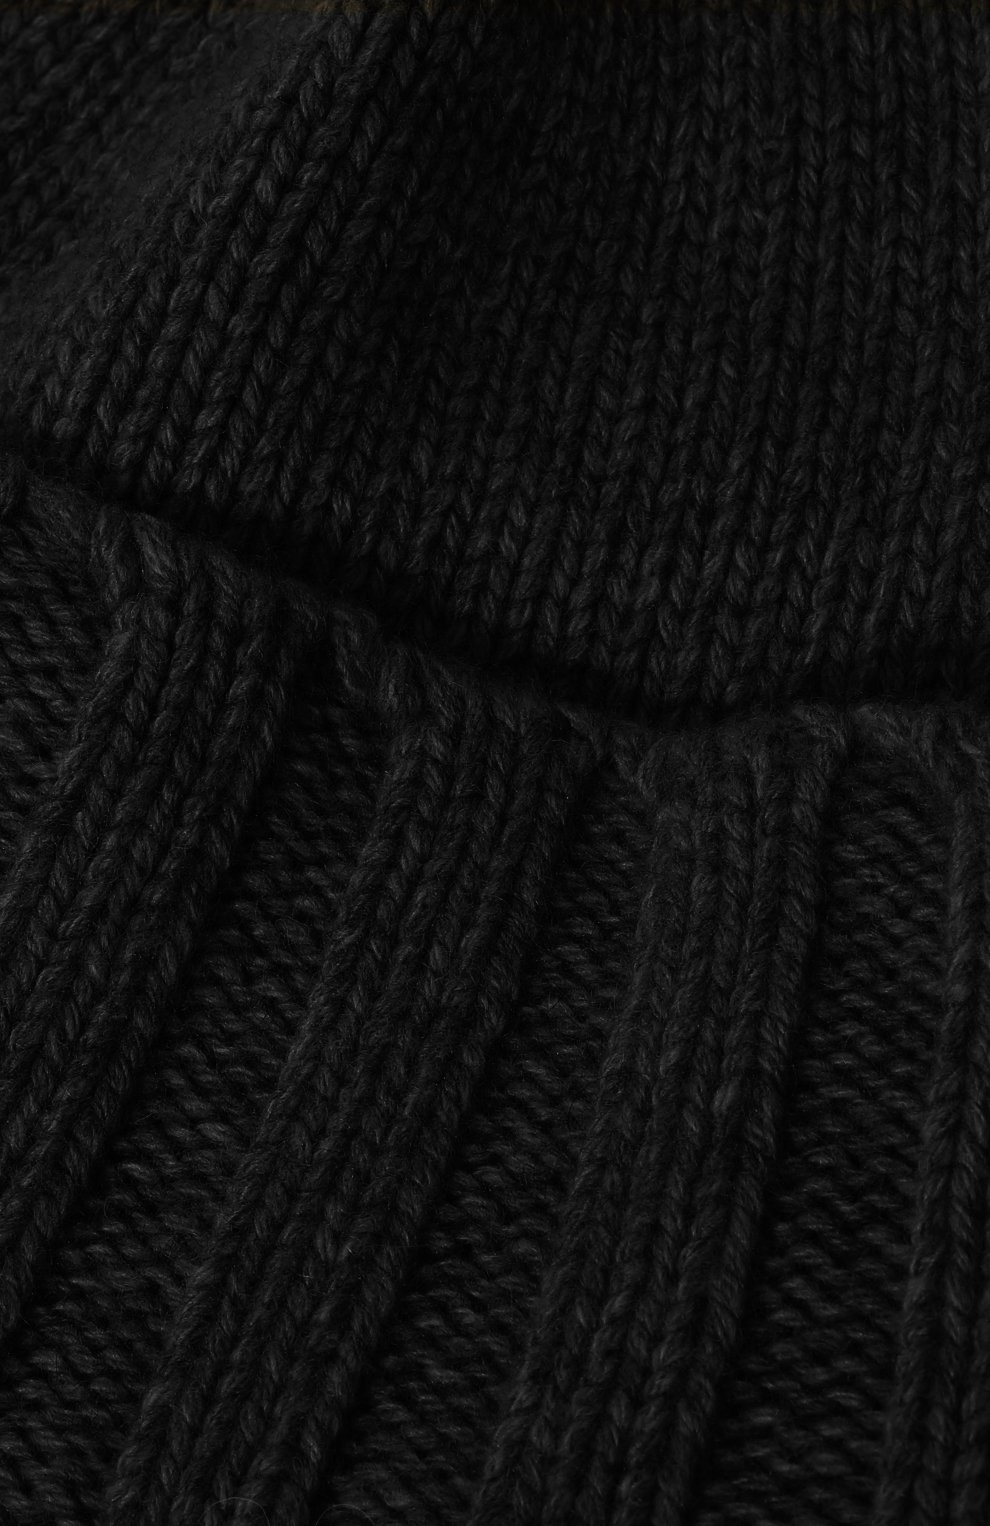 Женская кашемировая шапка EMPORIO ARMANI черного цвета, арт. 637547/0A461 | Фото 4 (Материал: Текстиль, Кашемир, Шерсть)